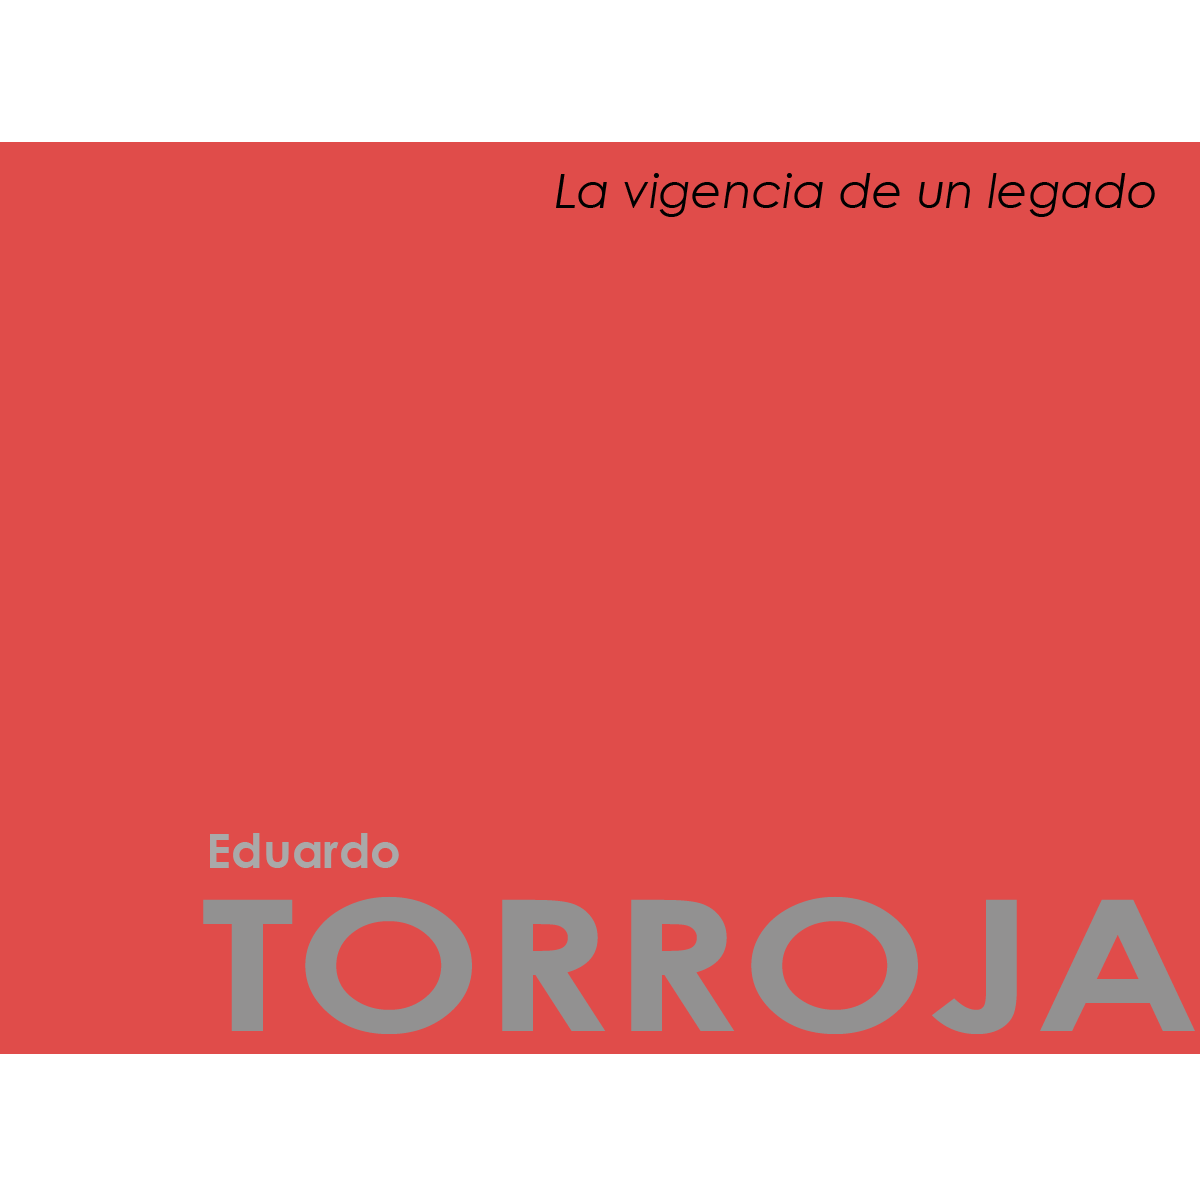 Eduardo Torroja: la vigencia de un legado